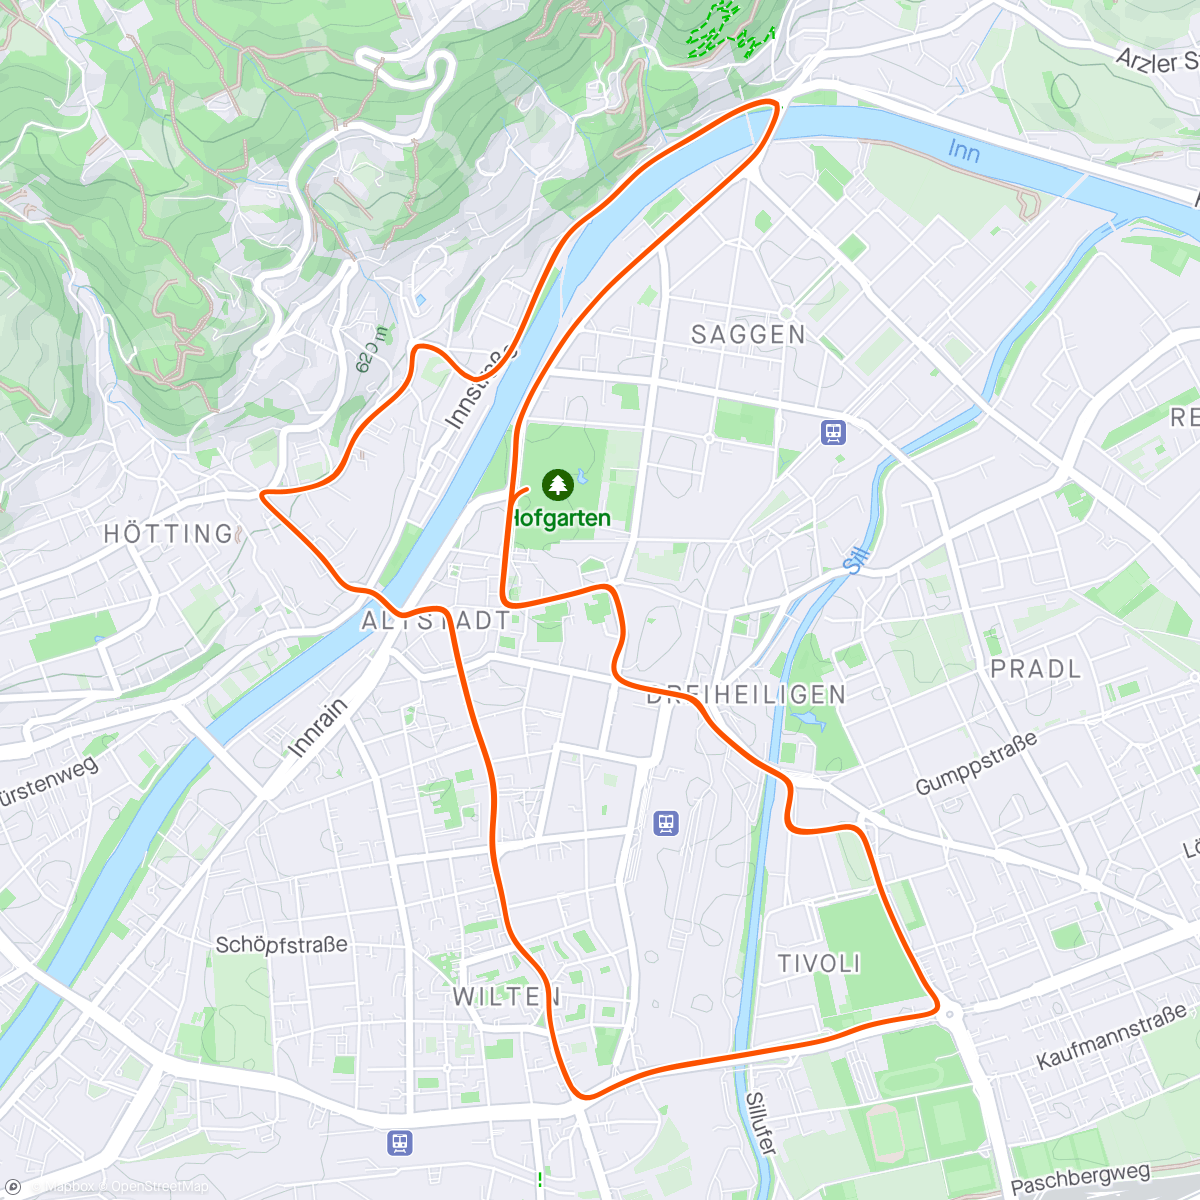 Map of the activity, Zwift - Race: Sydkysten Race (B) on Innsbruckring in Innsbruck